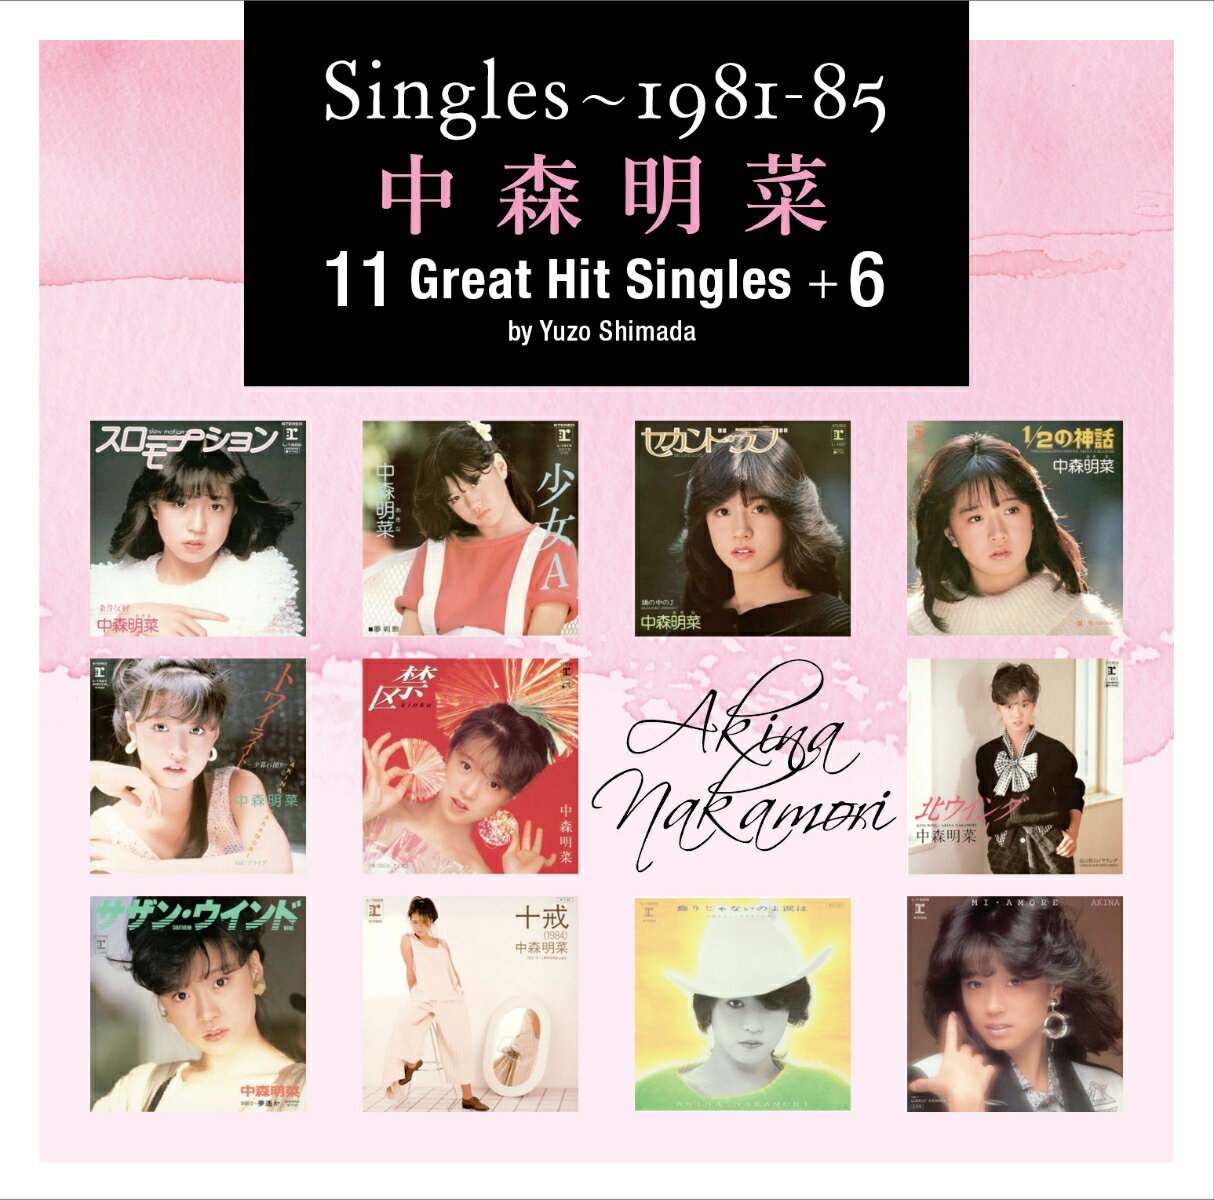 【特典】Singles〜1981-85 中森明菜11 Great Hit Singles +6 by Yuzo Shimada(中森明菜 オリジナルクリアファイル(A4サイズ))